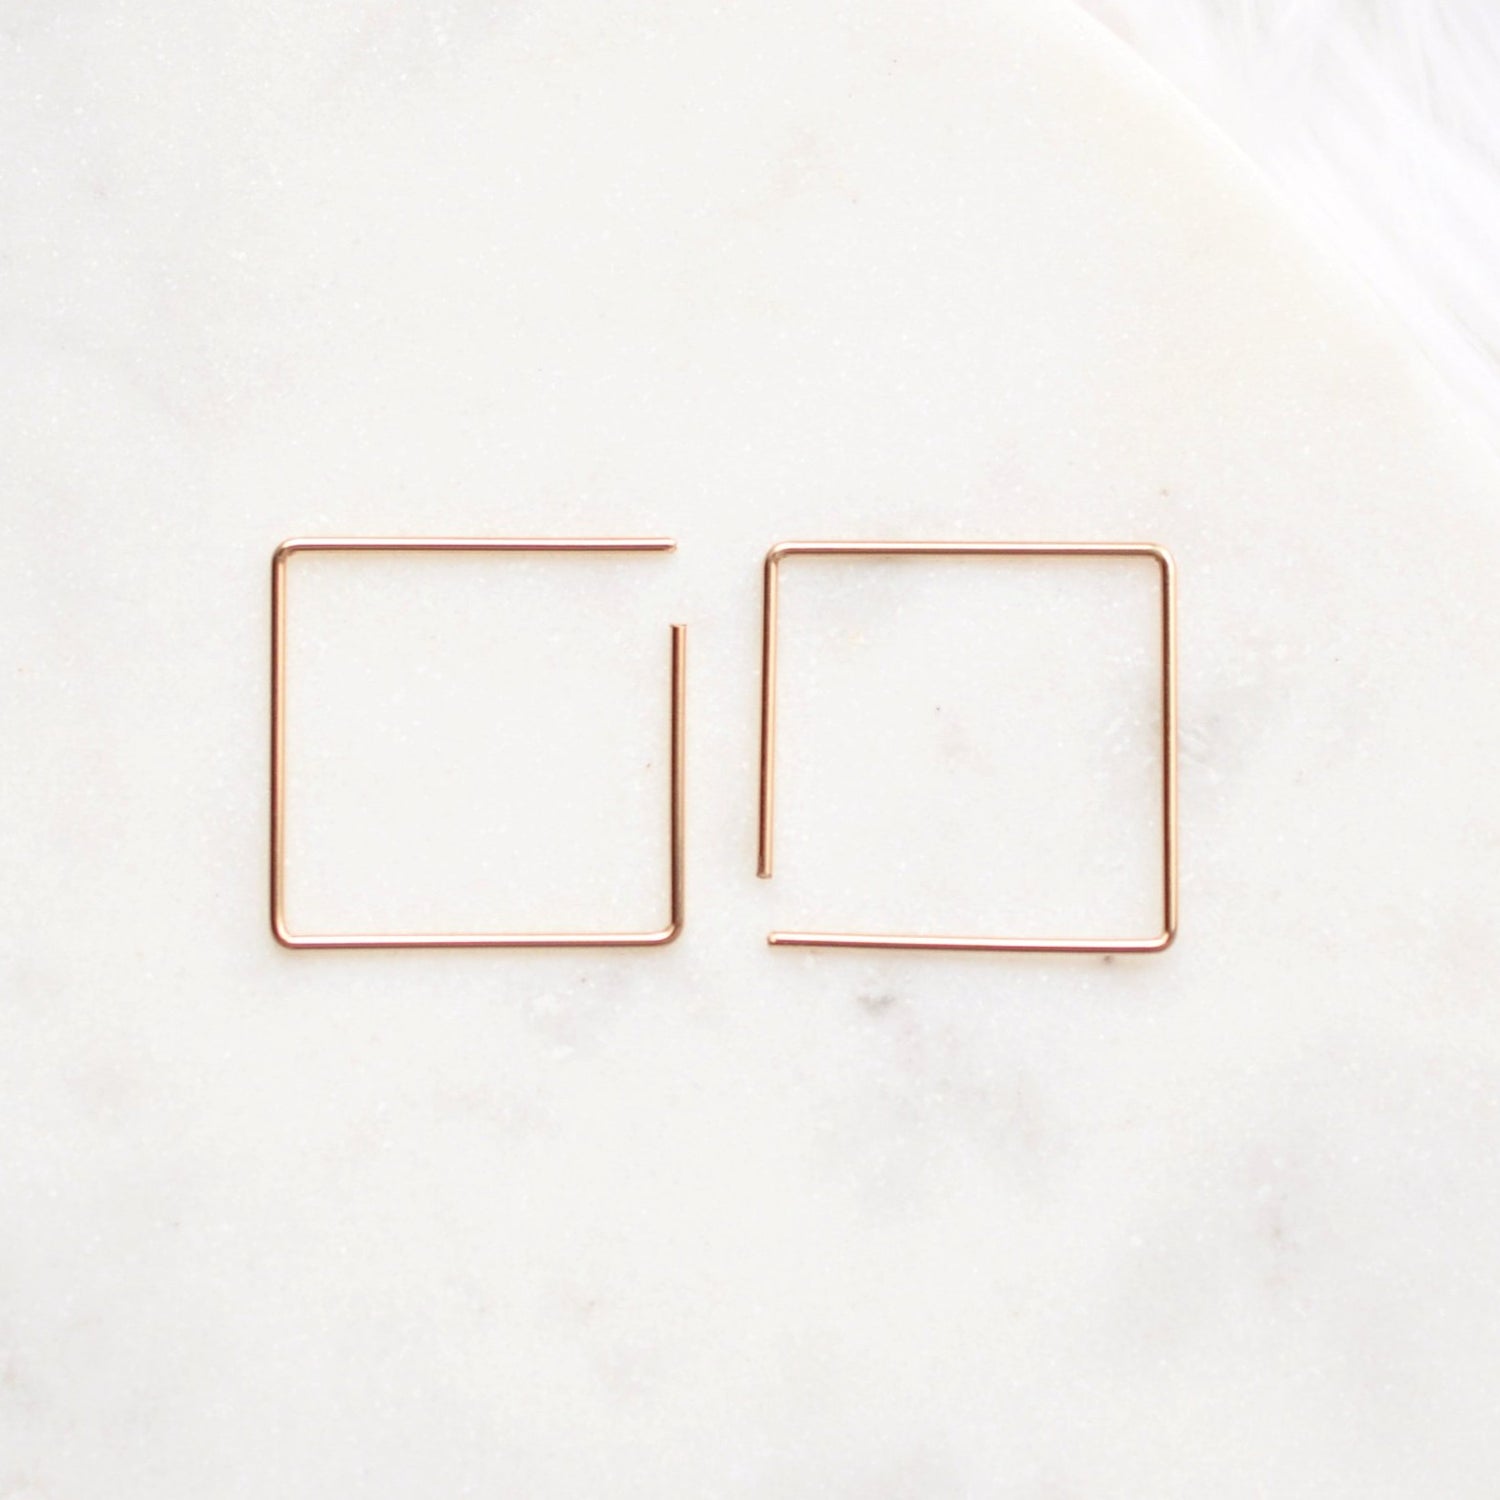 Small Square Sliders - Quad Espresso Jewelry